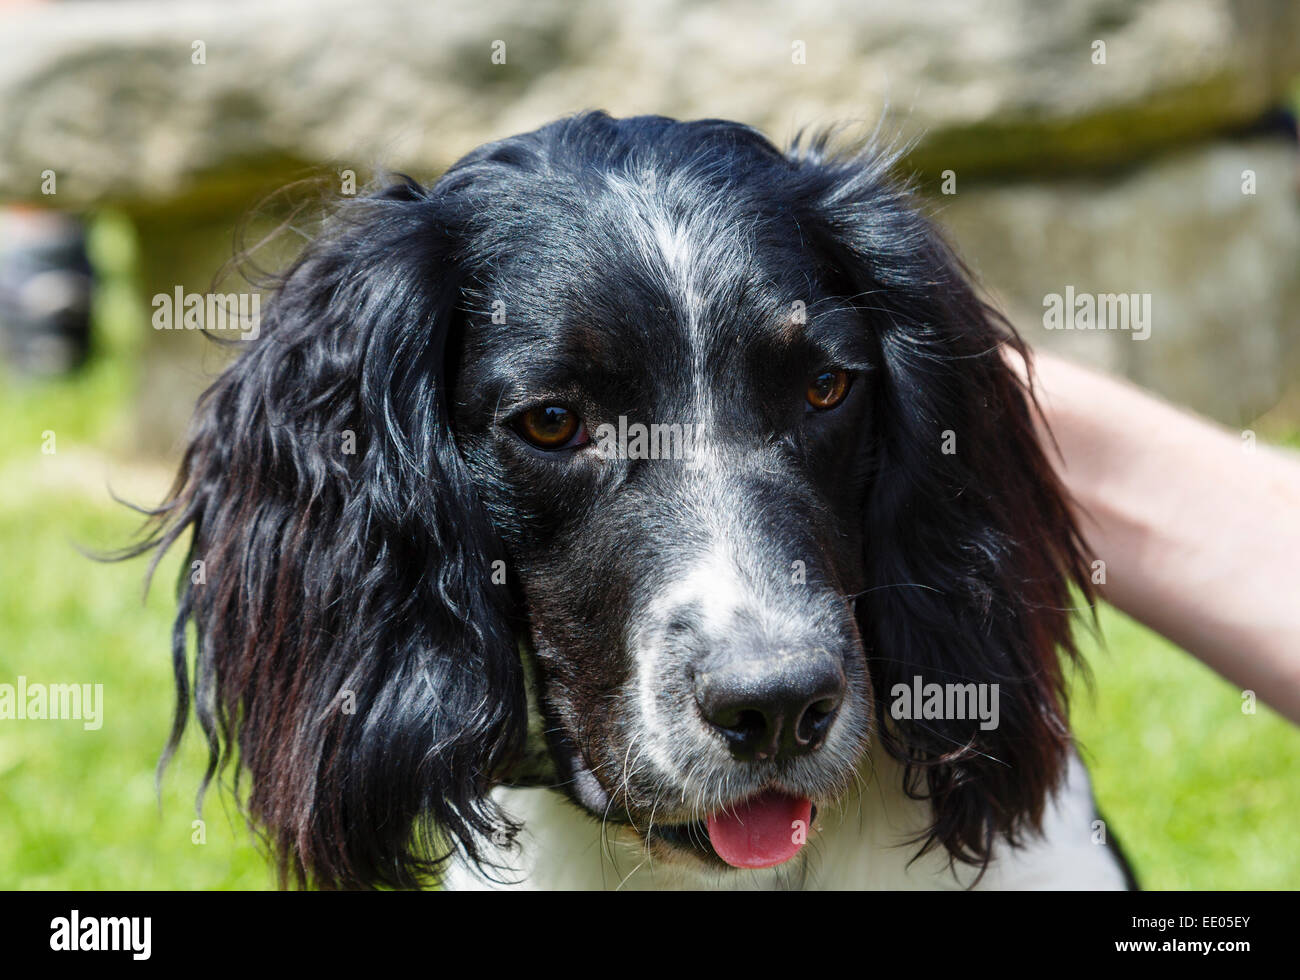 Una persona di accarezzare e prendersi cura di un simpatico in bianco e nero English Springer Spaniel cane. Inghilterra, Regno Unito, Gran Bretagna Foto Stock